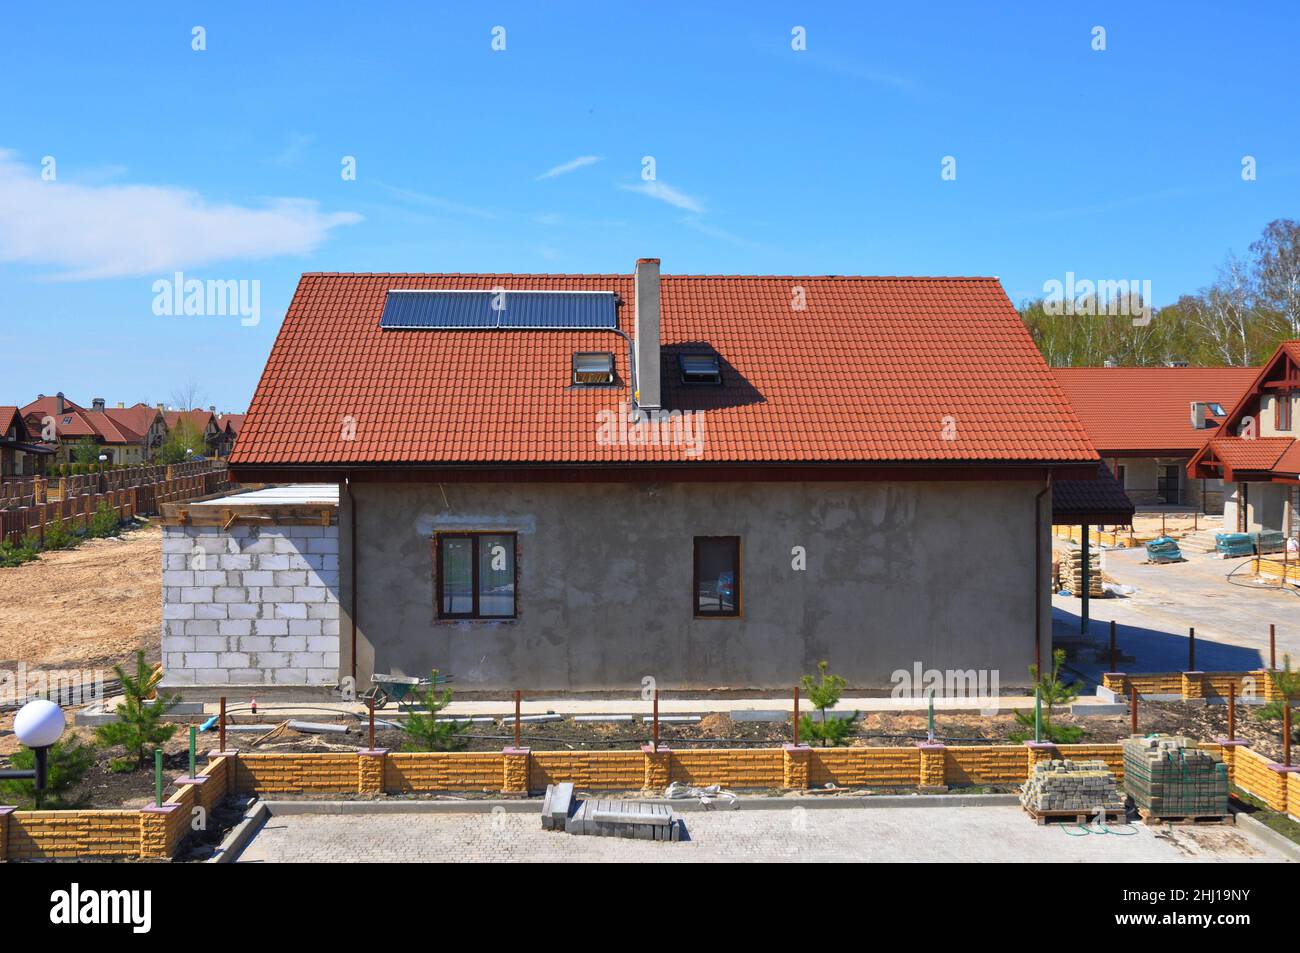 Solar Water Heater, Sonnenkollektoren und Oberlichter, schönes neues modernes Haus mit Solar Water Panel Heizung. Dachkonstruktion. Hausbau Stockfoto